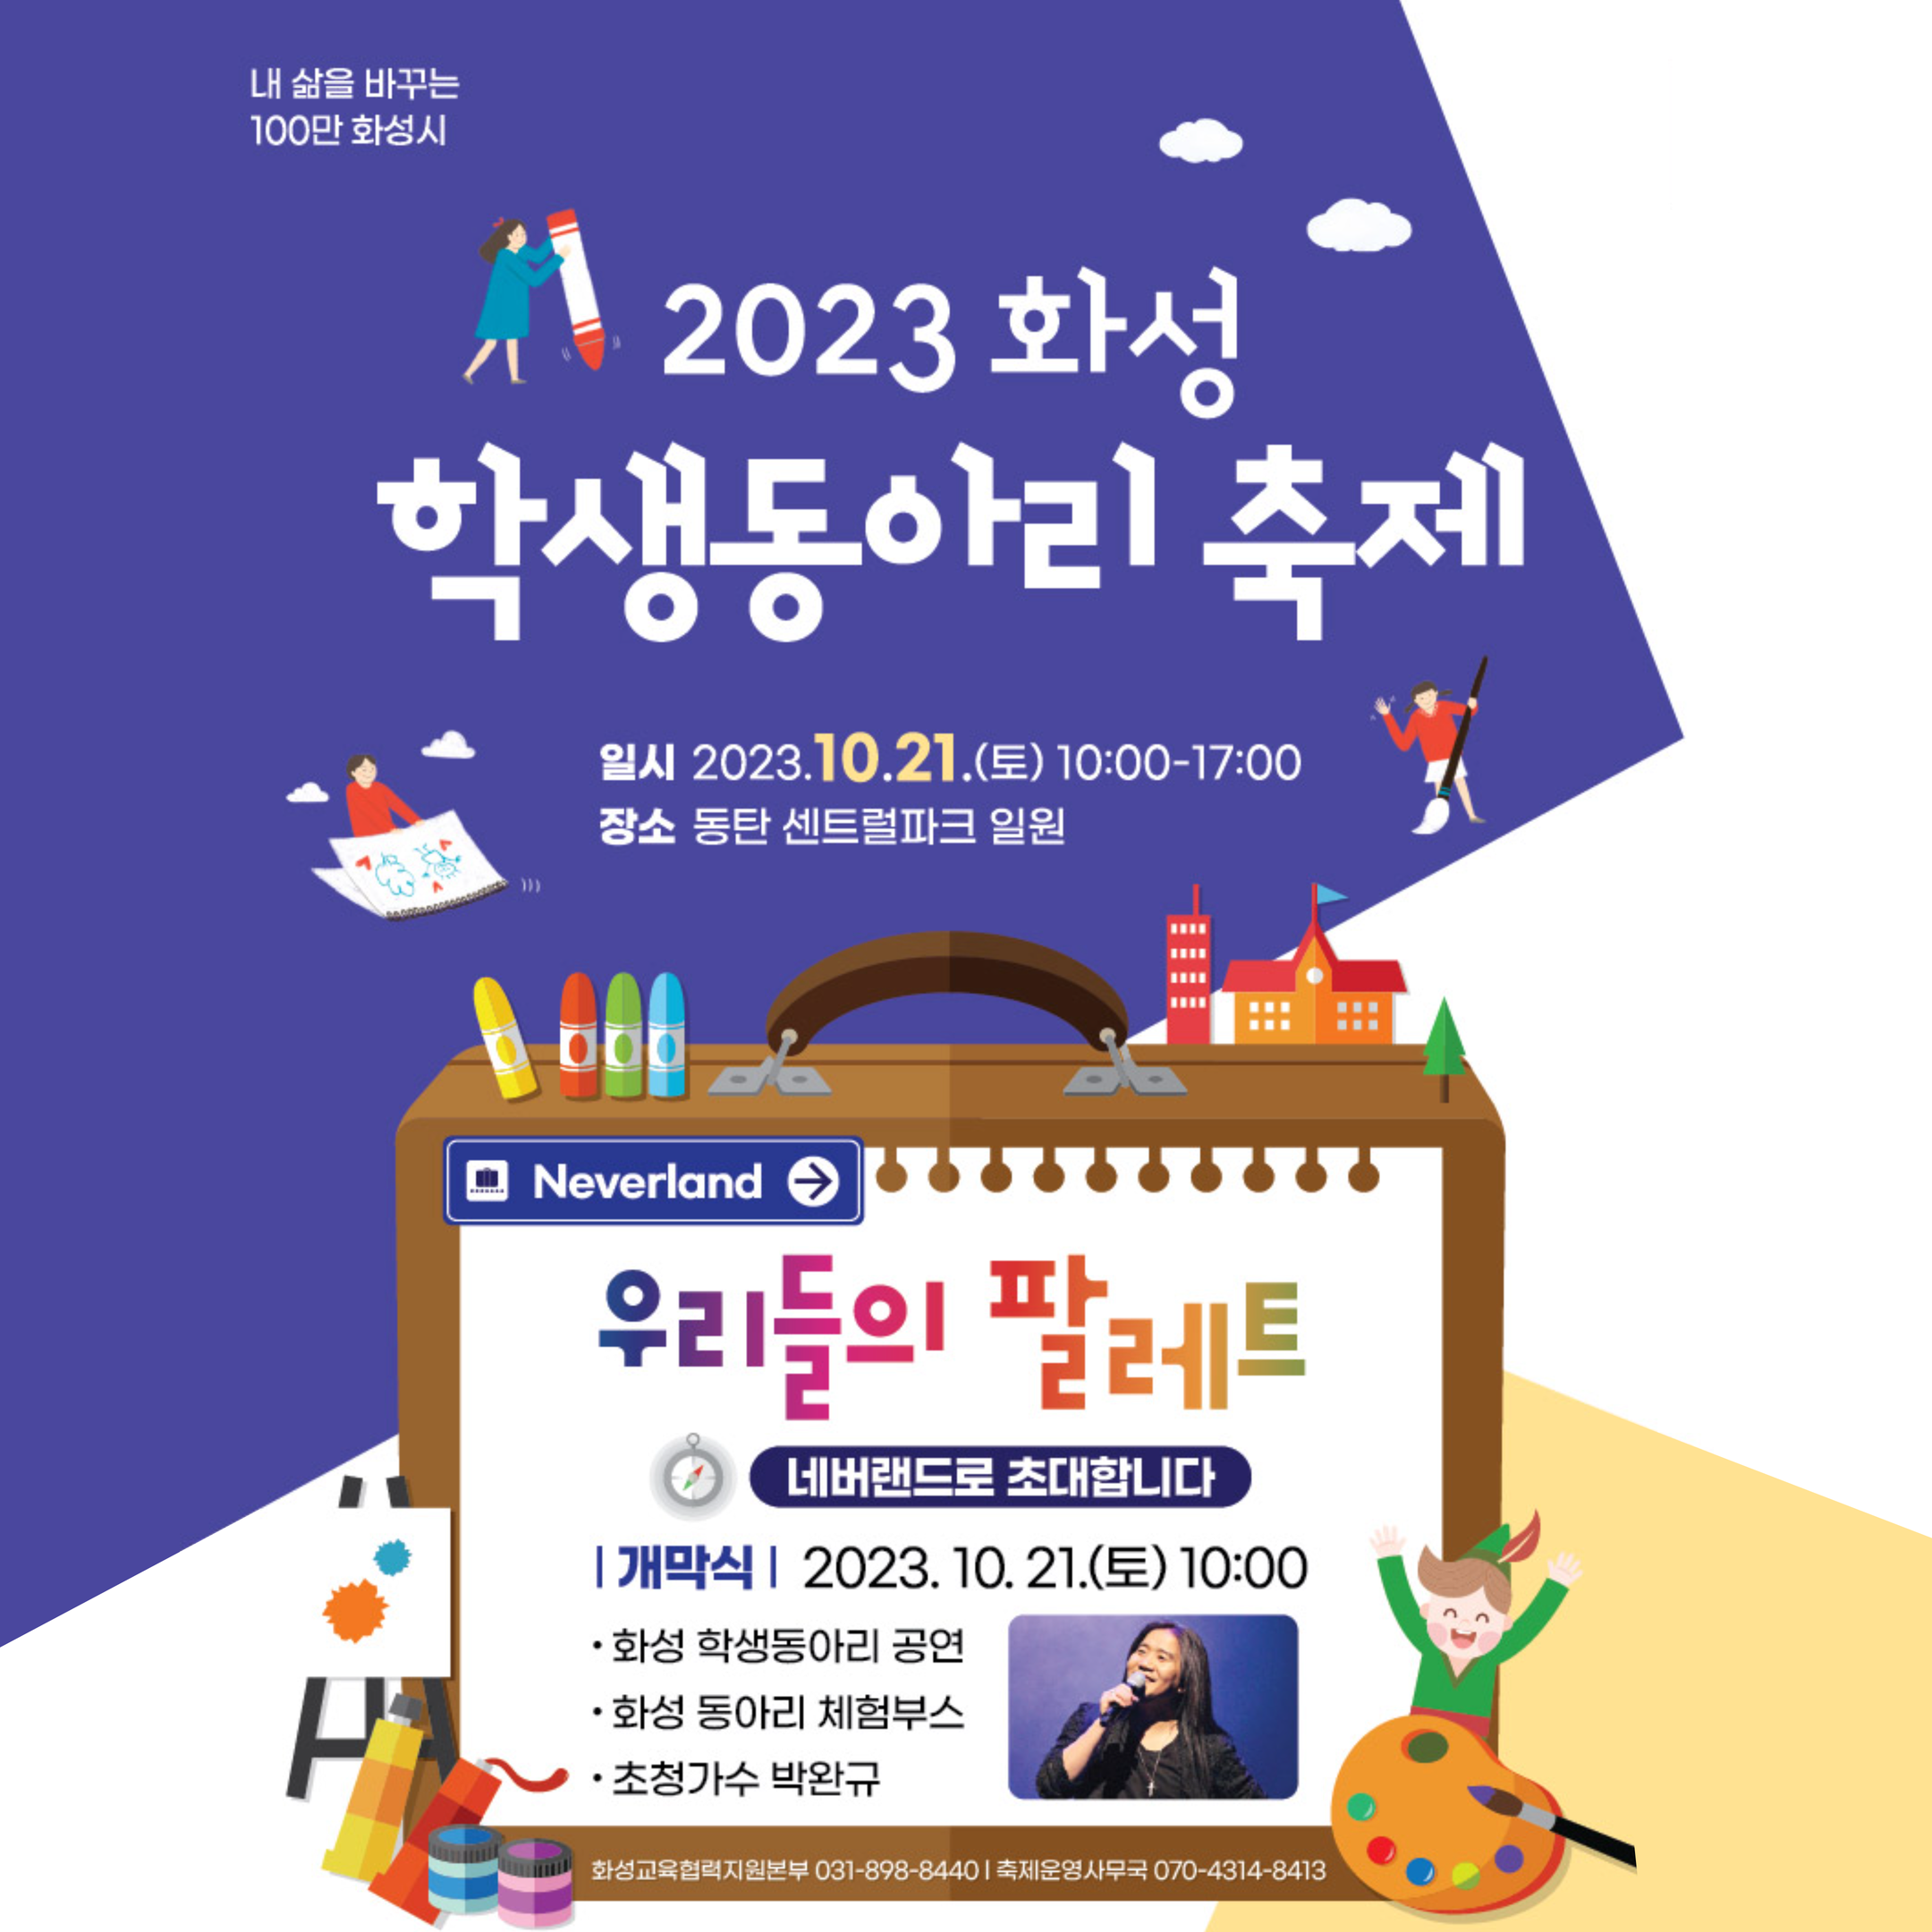 2023 화성 학생동아리 축제 개최 안내